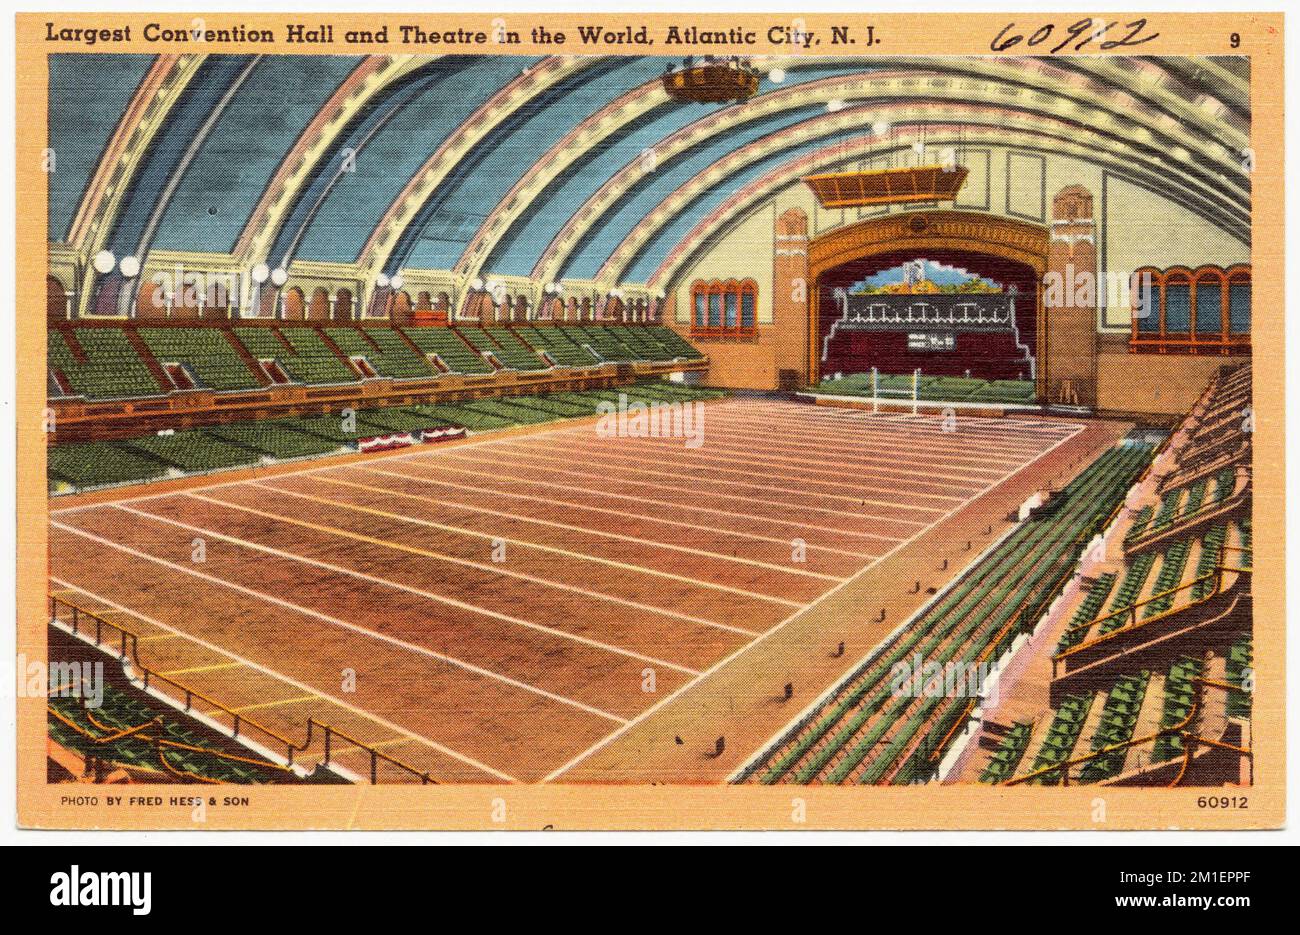 La più grande sala convegni e teatro del mondo, Atlantic City, N. J., strutture commerciali, strutture sportive e ricreative, Tichnor Brothers Collection, cartoline degli Stati Uniti Foto Stock